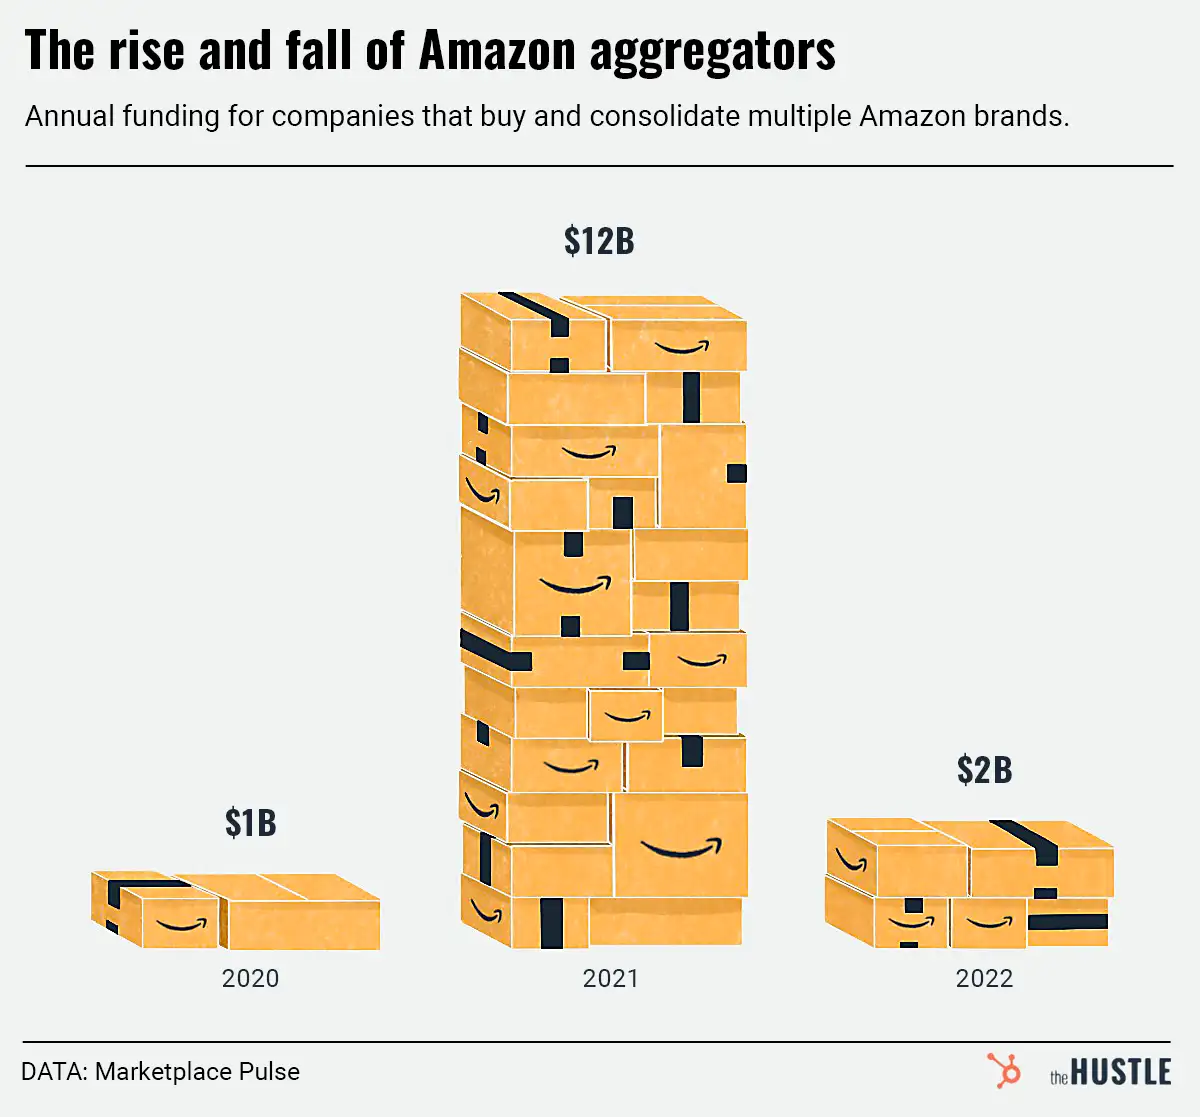 Amazon aggregators are losing steam